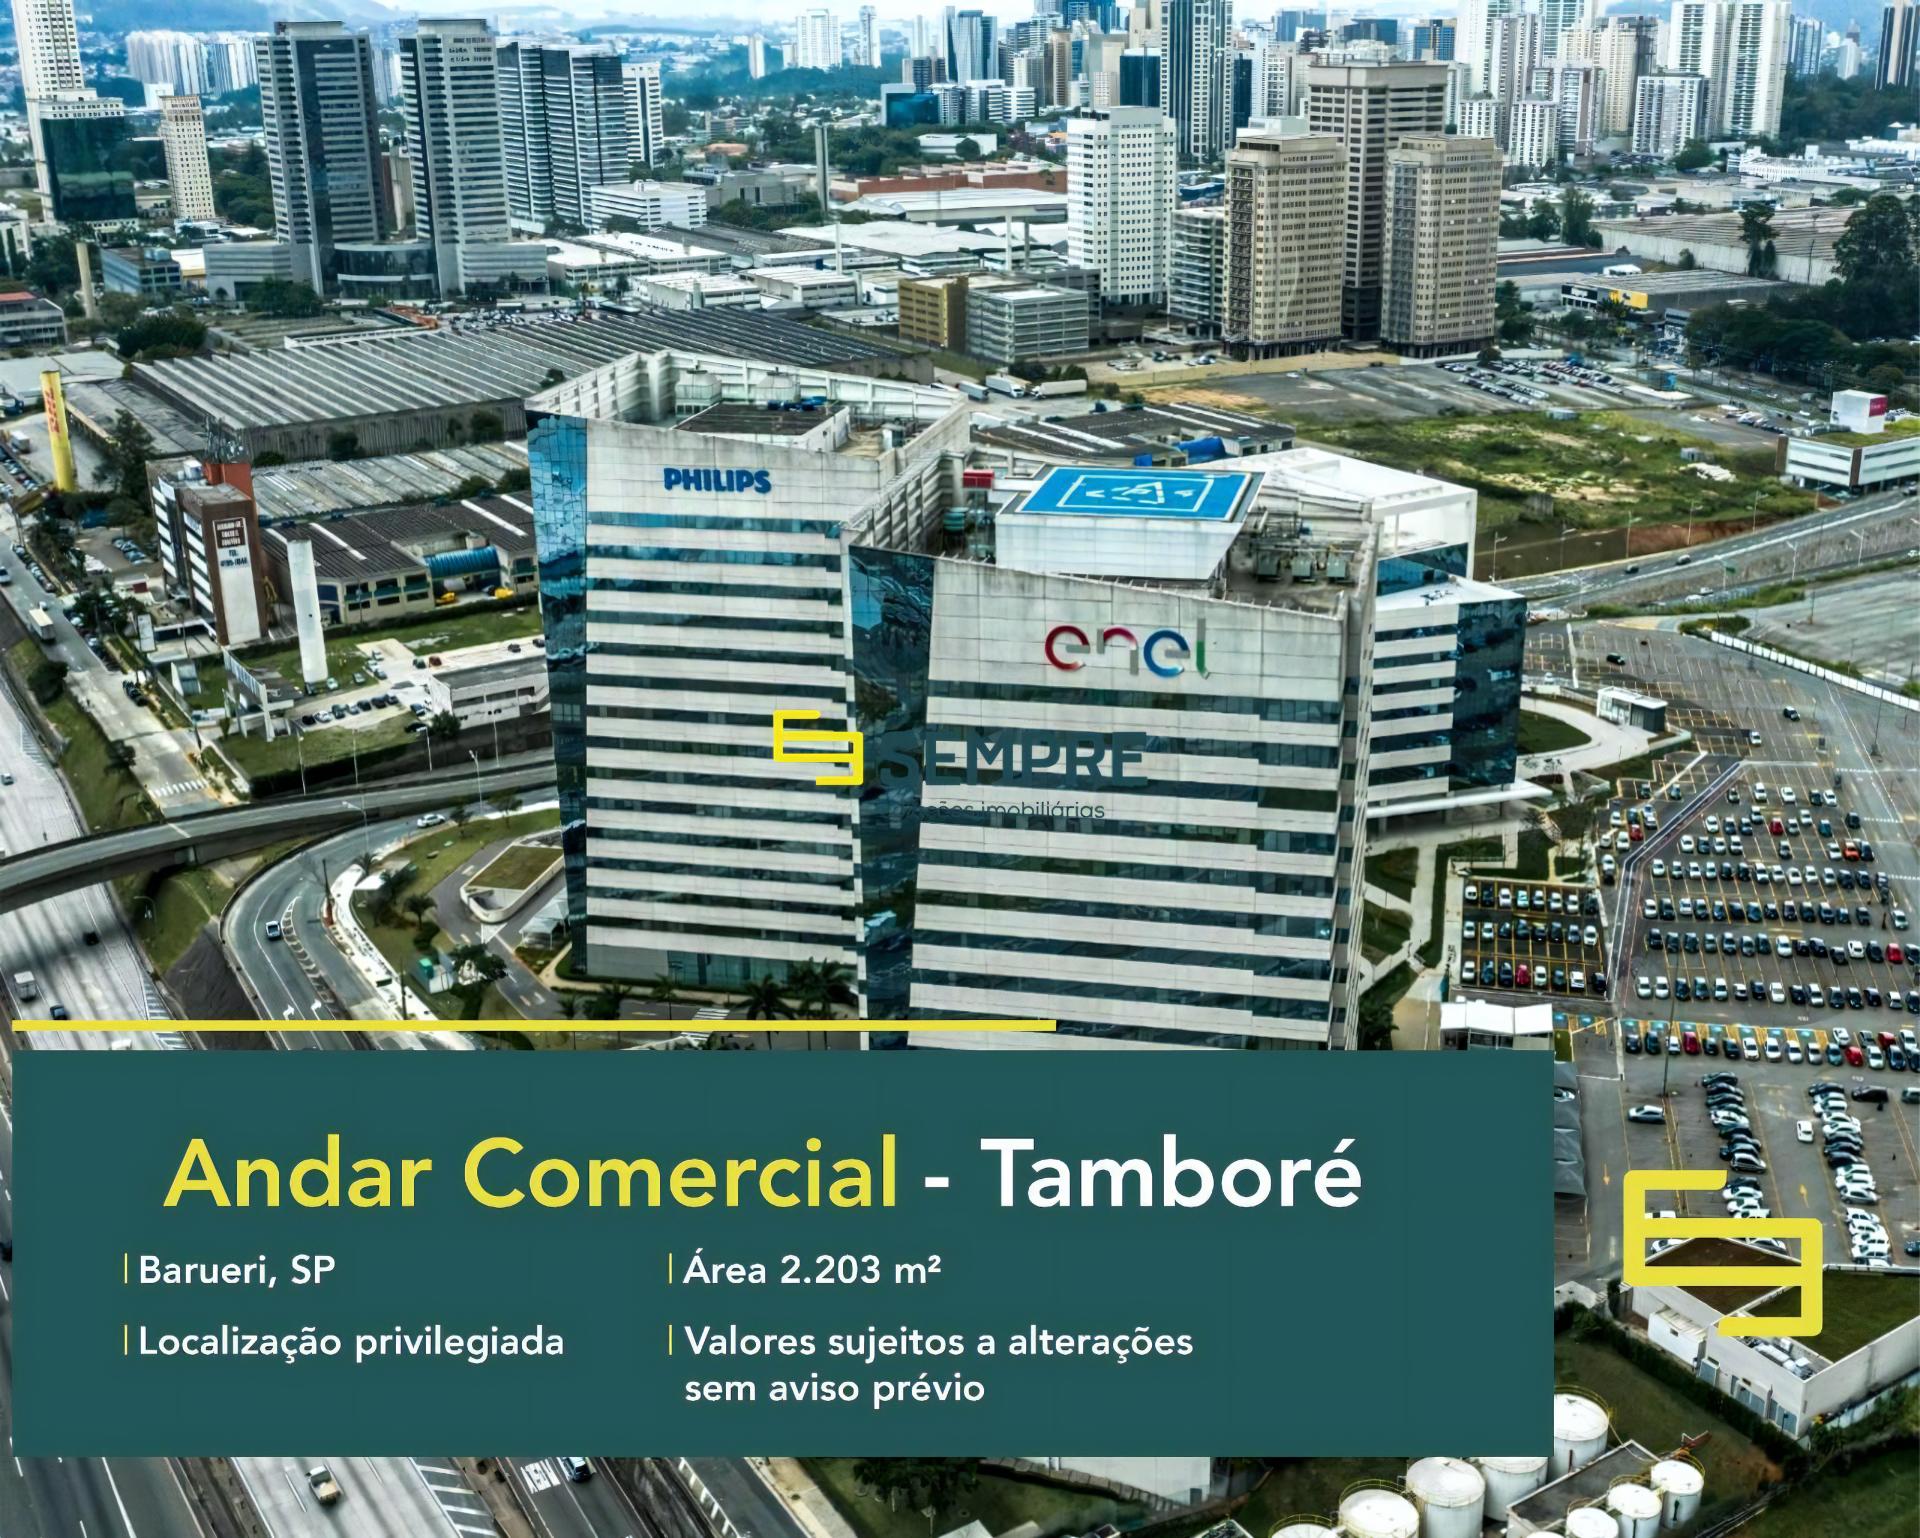 Laje corporativa no Tamboré para locação em São Paulo, excelente localização. O estabelecimento comercial conta com área de 2.203 m².